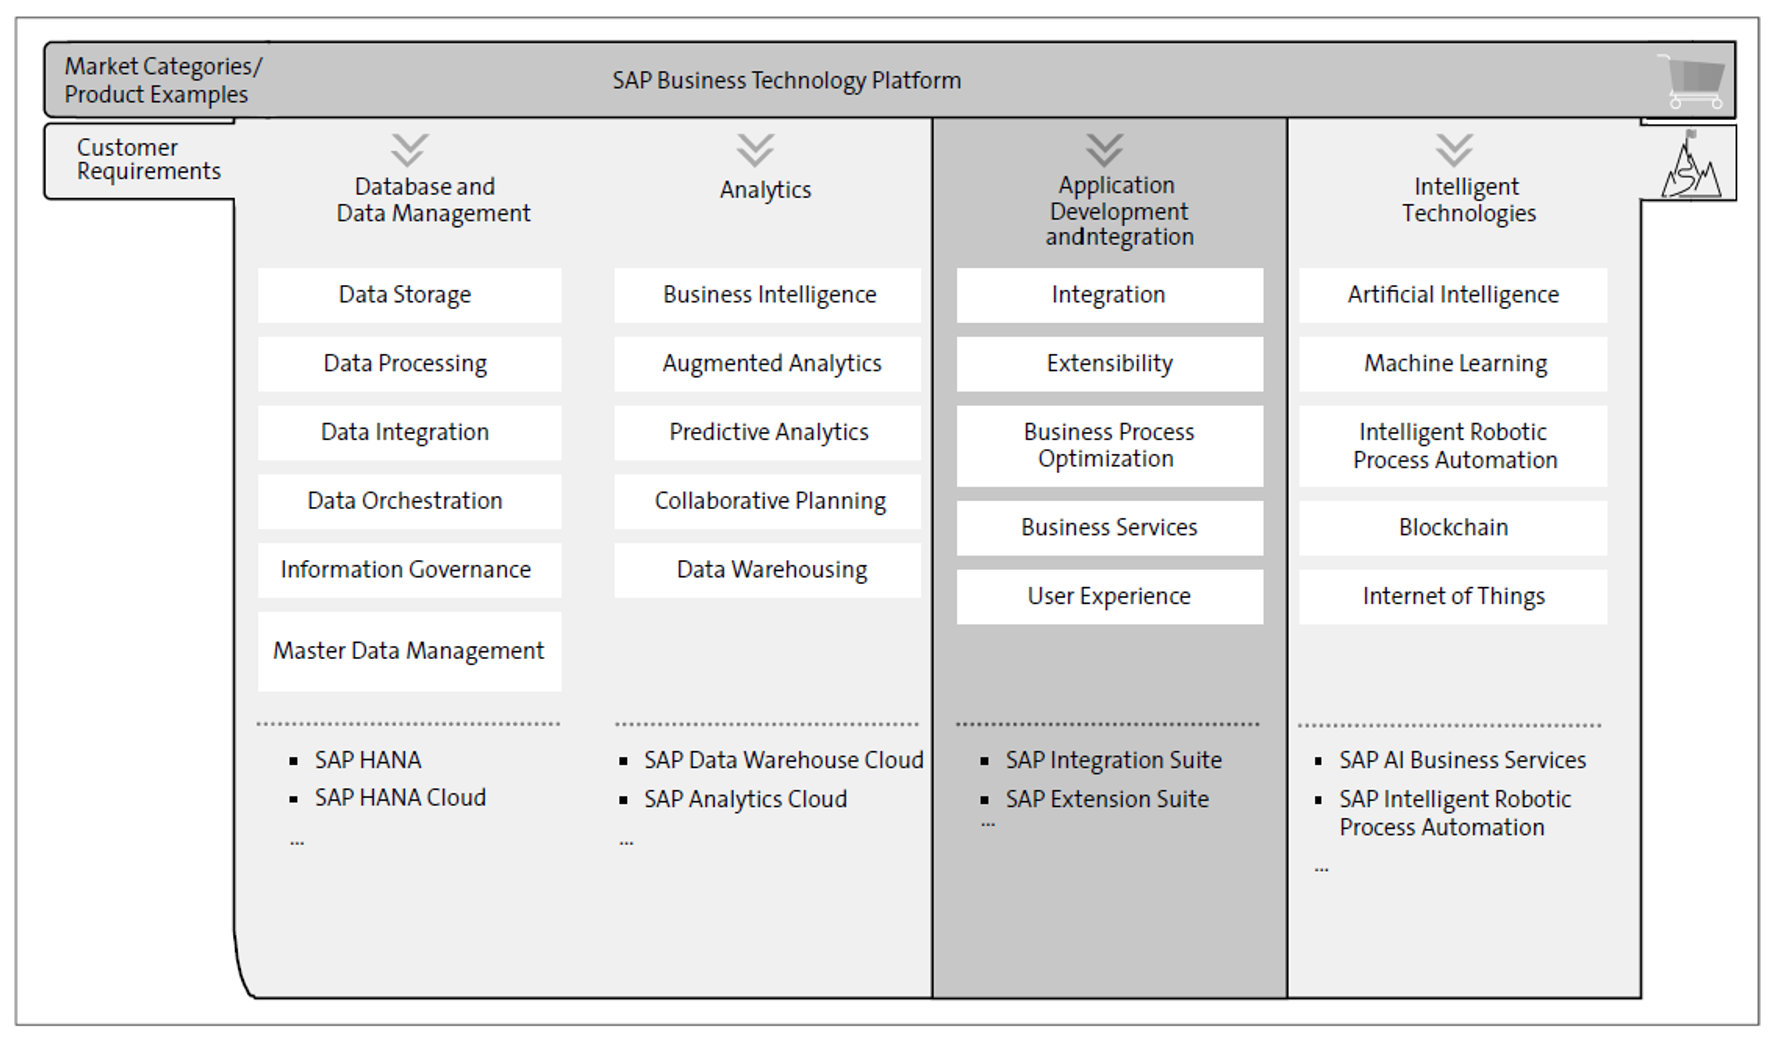 SAP BTP: Application Development and Integration Pillar